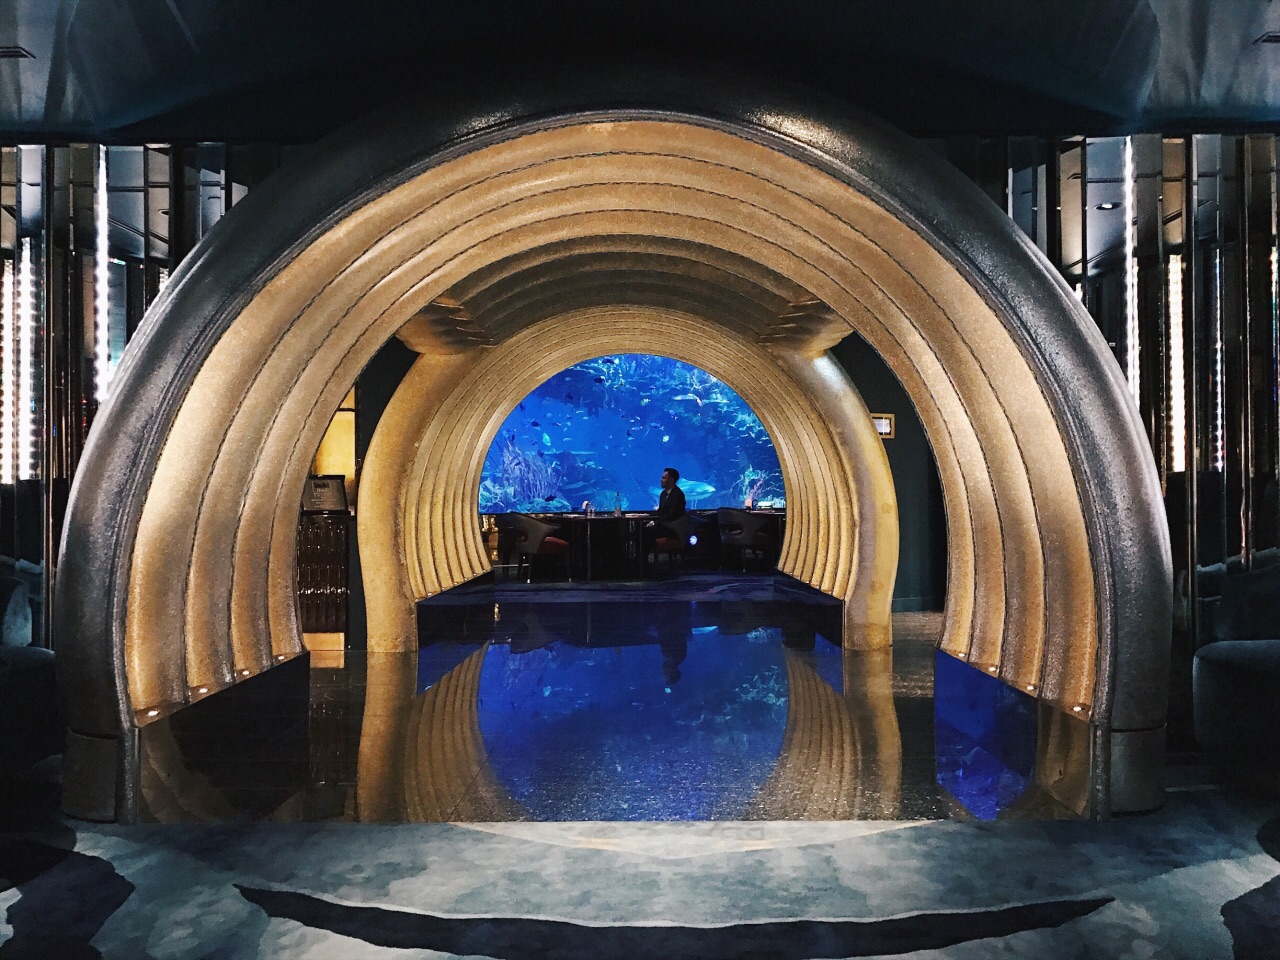 迪拜旅游〡七星帆船酒店海底用餐，仿佛置身大海享受美味佳肴 ＊ 阿波罗新闻网